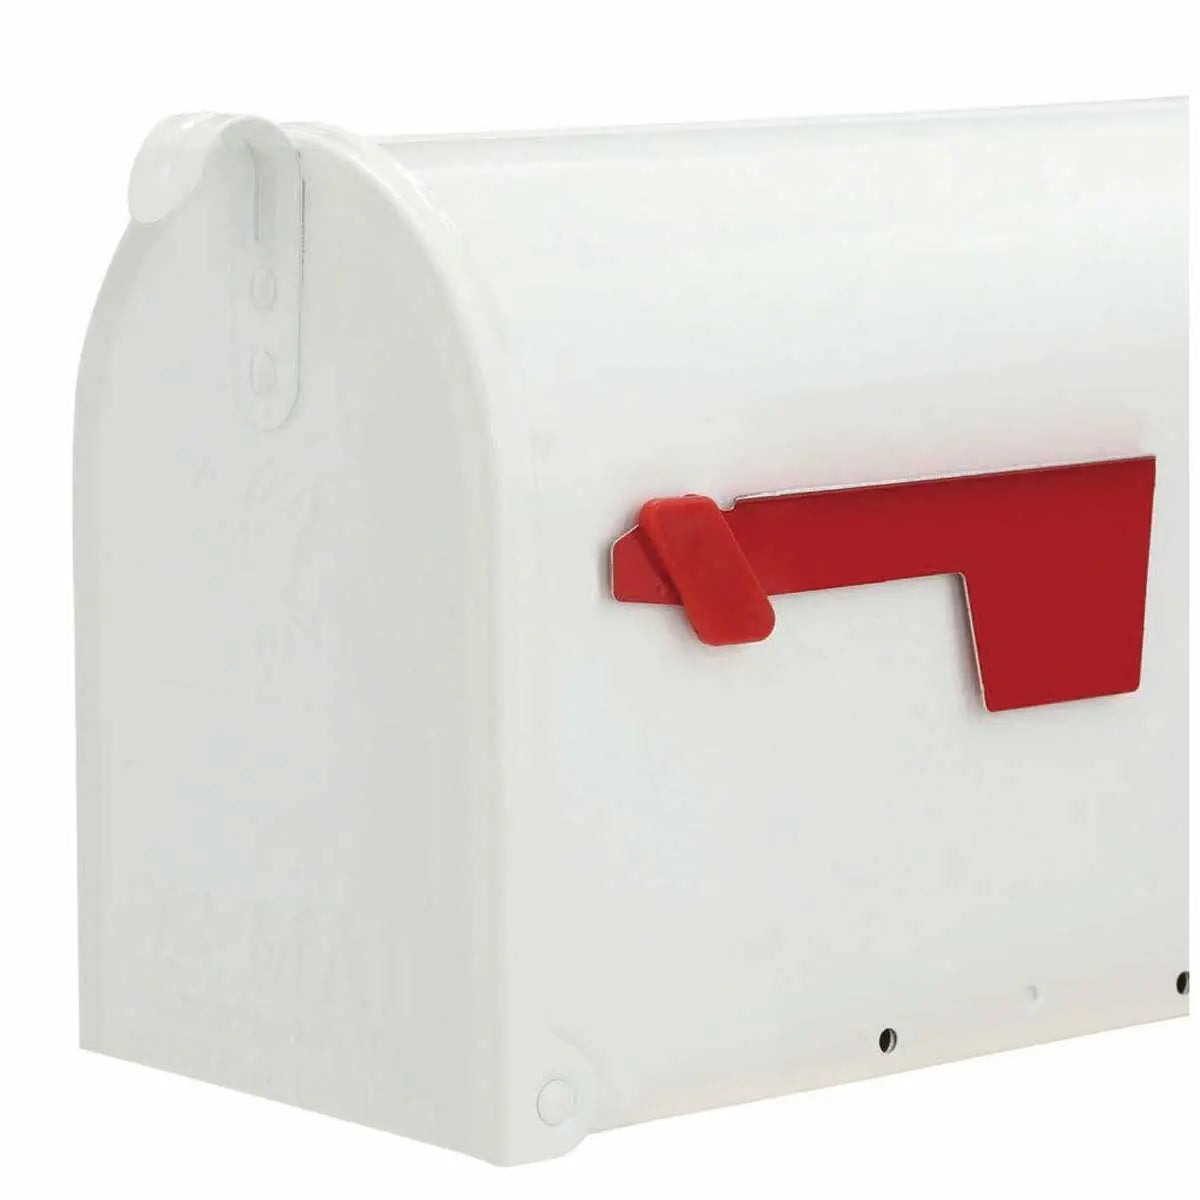 【アメリカ製】ジブラルタル・エリートポストマウントメールボックス Gibraltar Mailbox